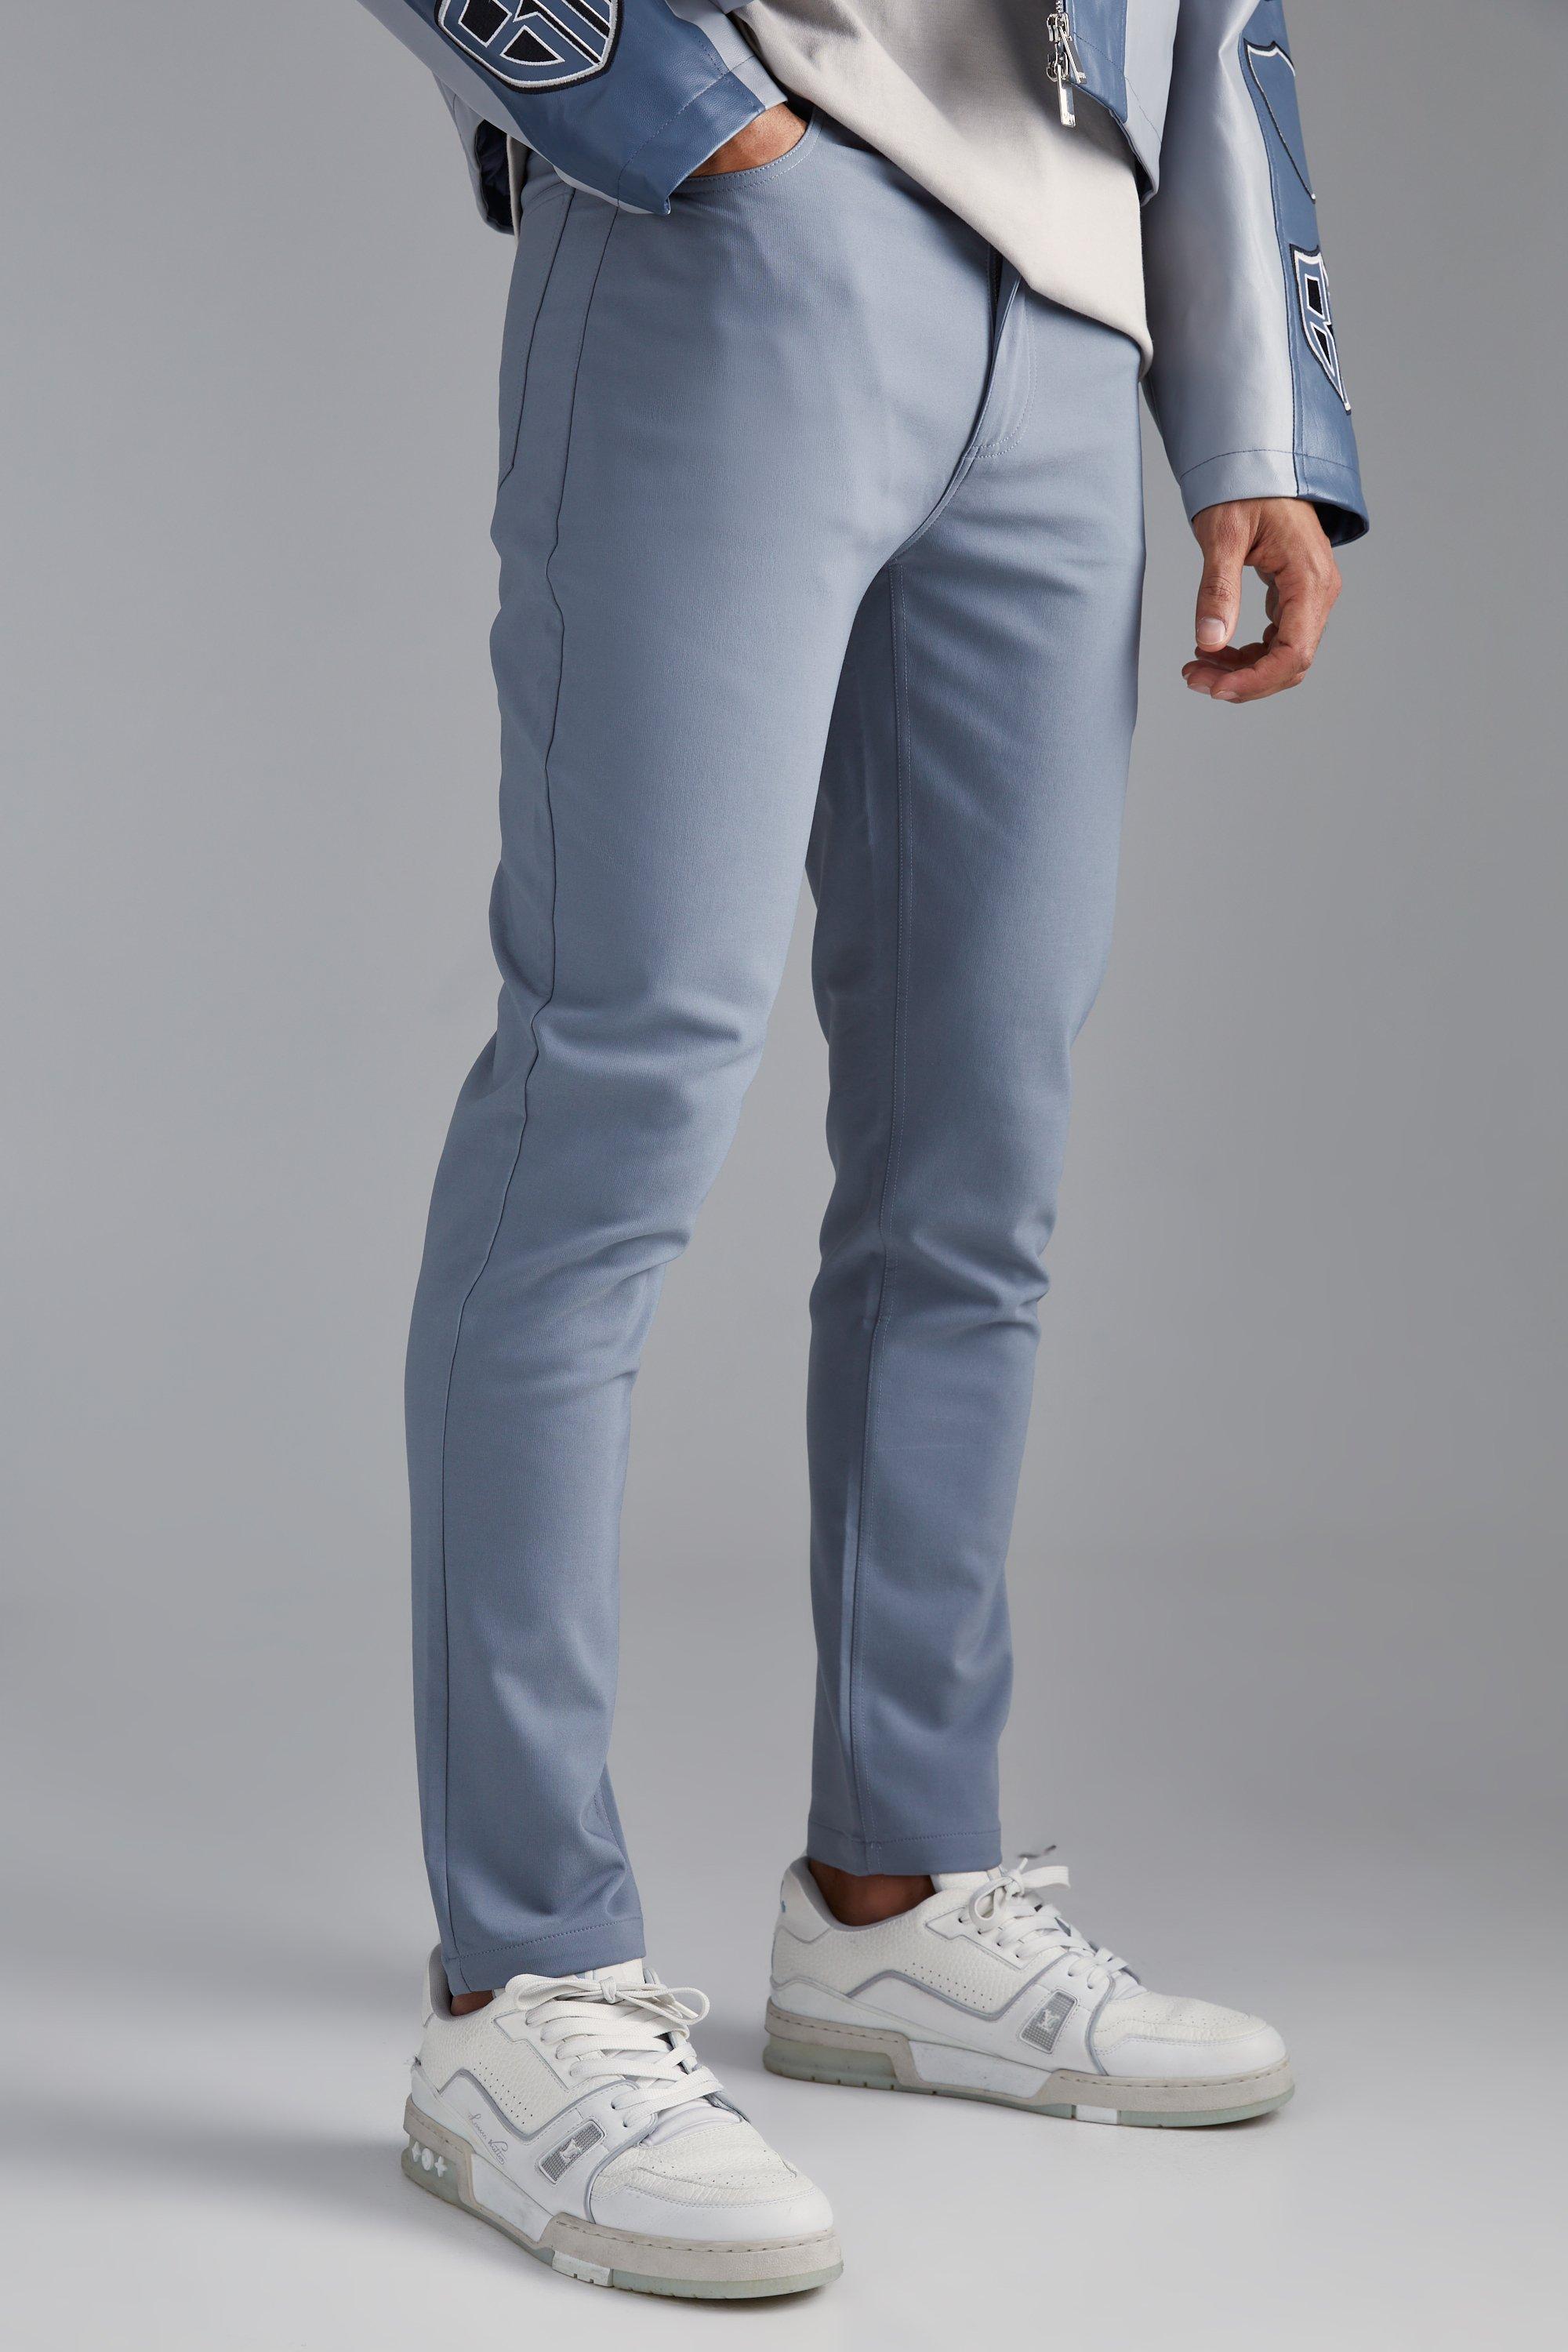 Men's Slim Fit Formal Trousers, Formal Pants for Men, Regular Fit, Lightweight